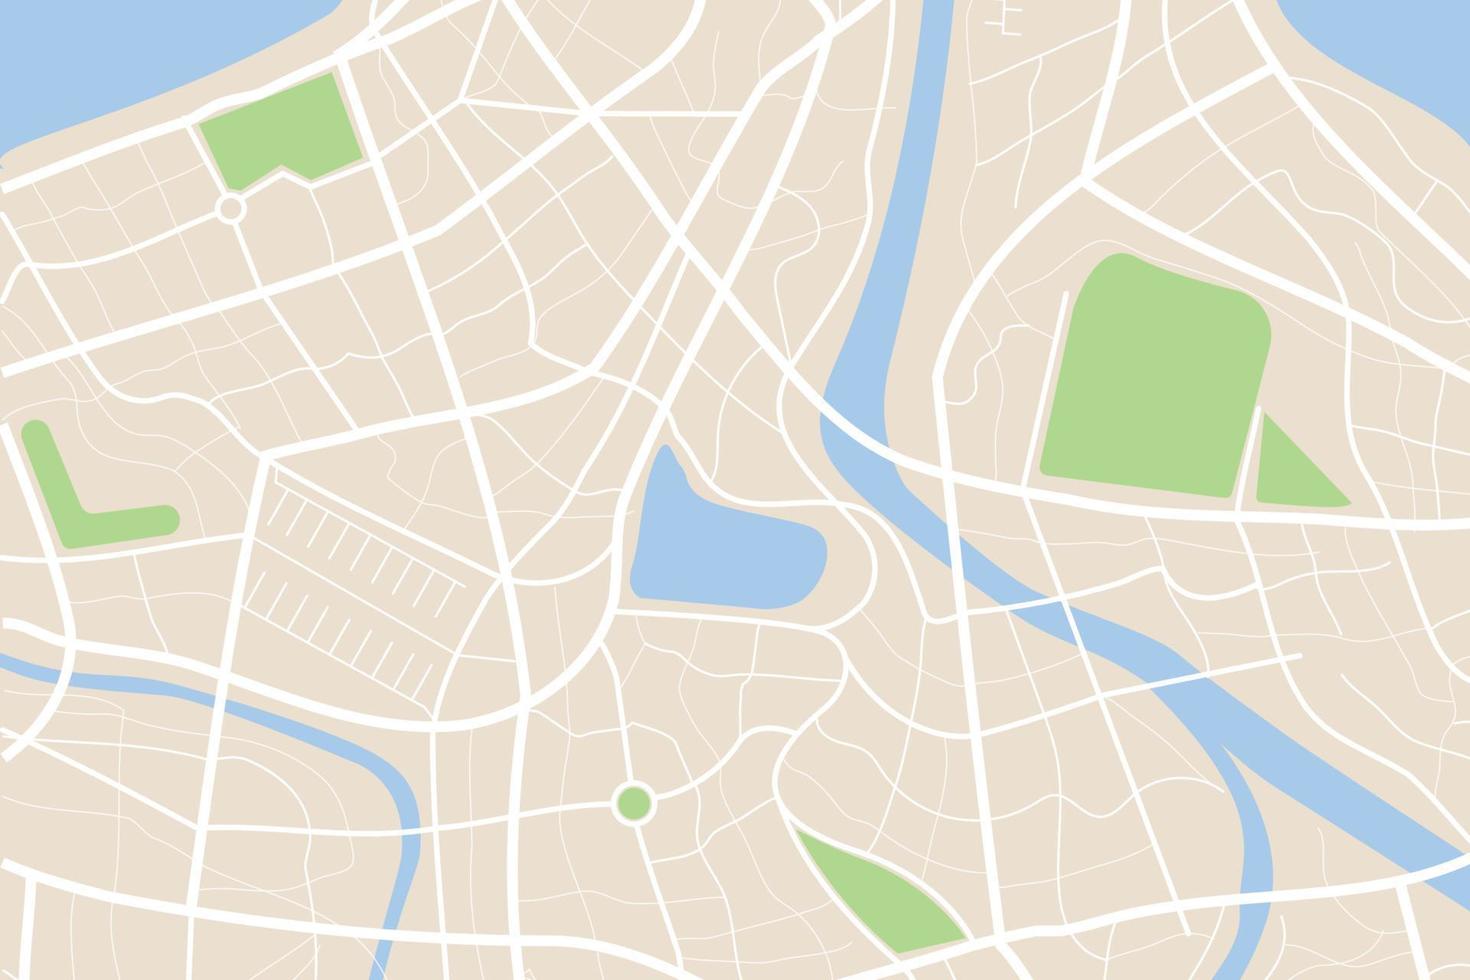 antenn rena topp se av de natt tid stad Karta med gata och flod 001 vektor